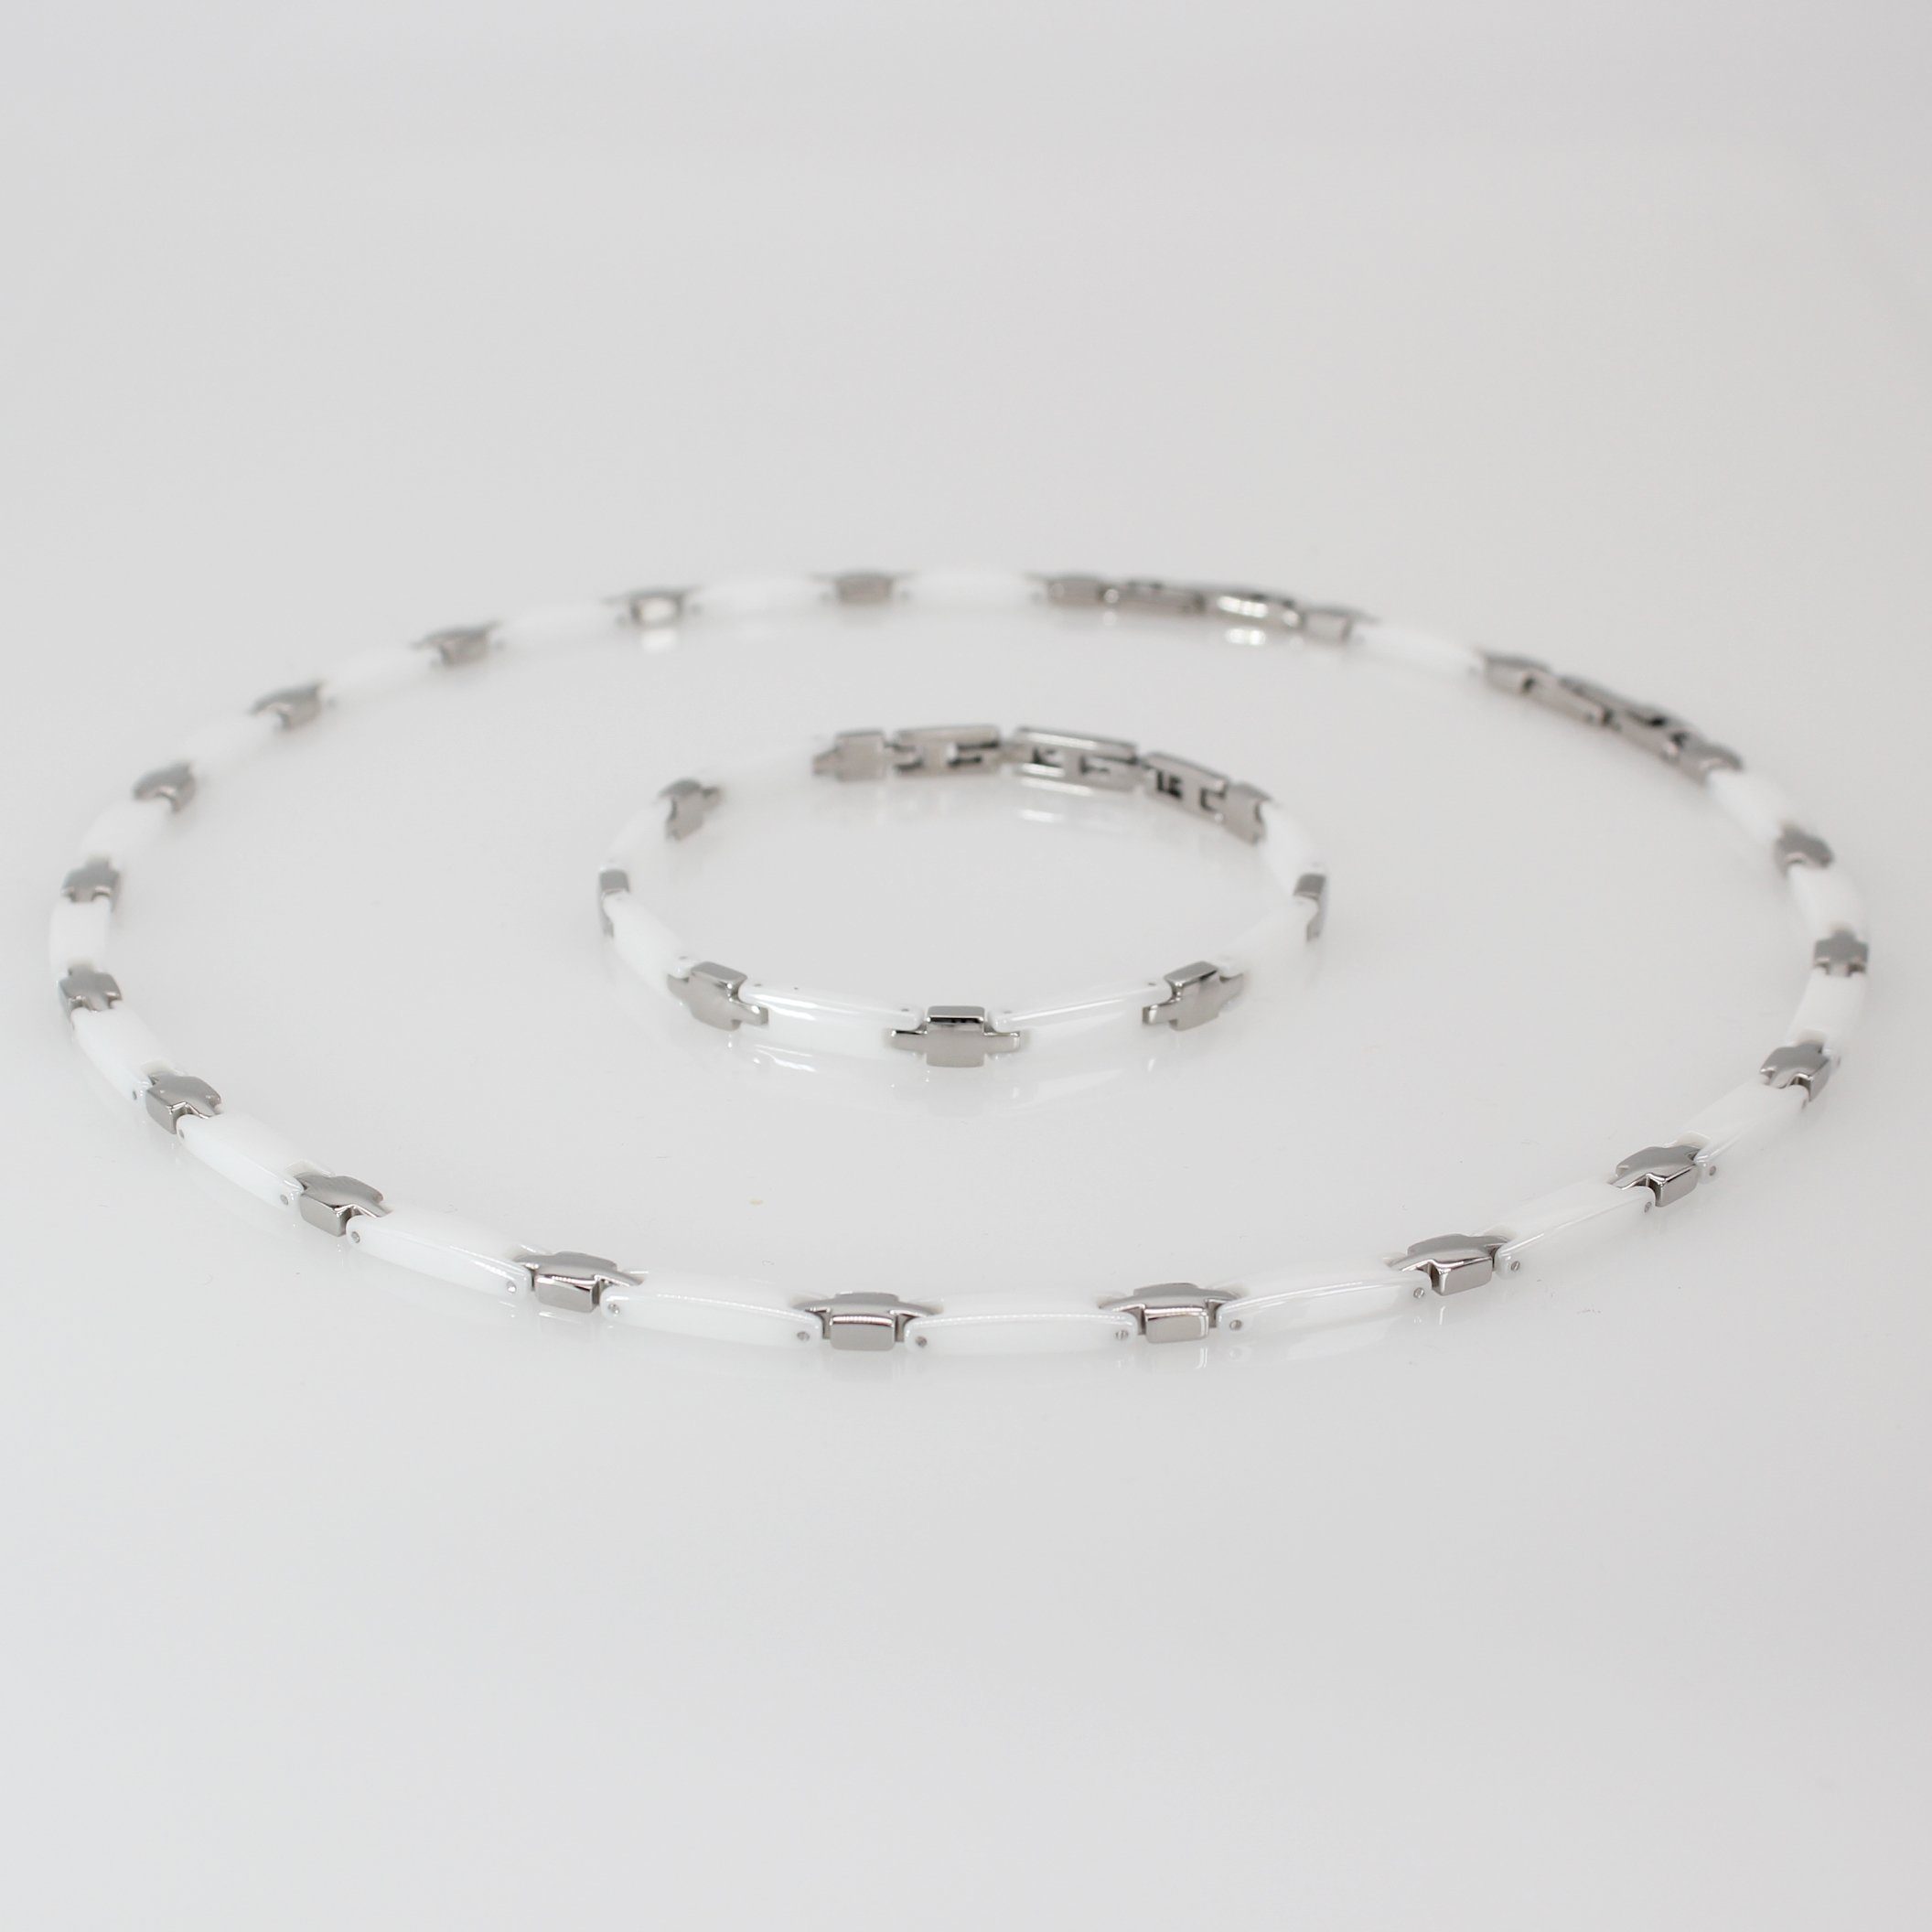 ELLAWIL Collier-Set Collier und Armband aus Keramik und Edelstahl Weiß, Silber (Kettenlänge 51 cm, Armbandlänge 20cm, Breite 6 mm), inklusive Geschenkschachtel